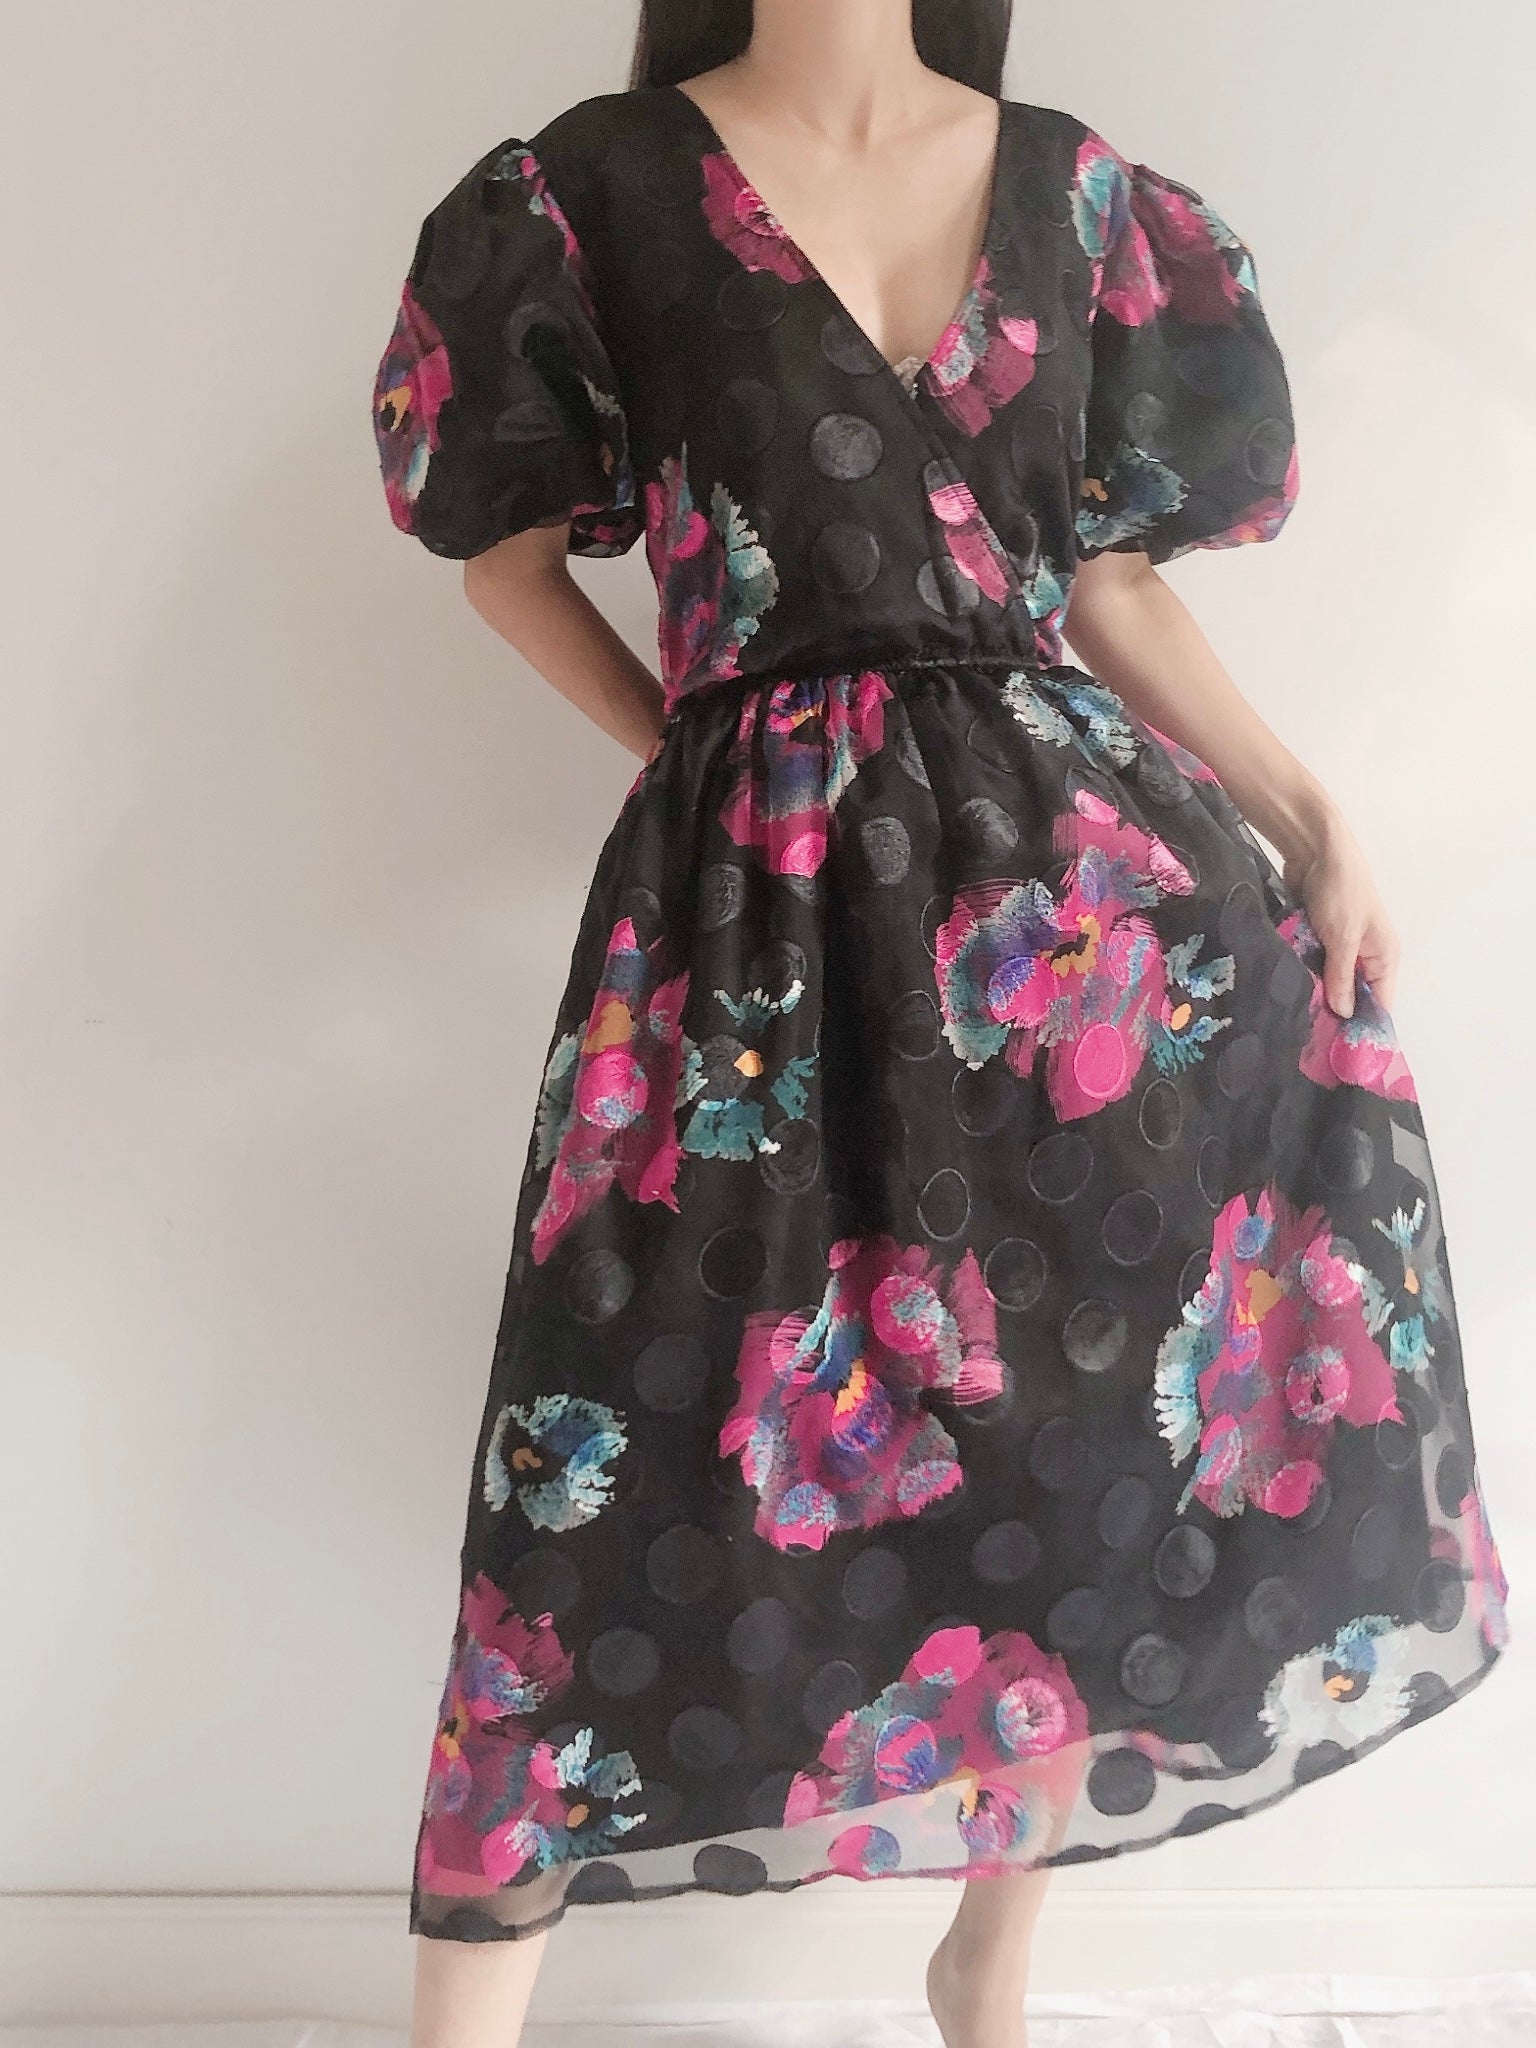 Vintage Puff Sleeves Floral Dress - S-M